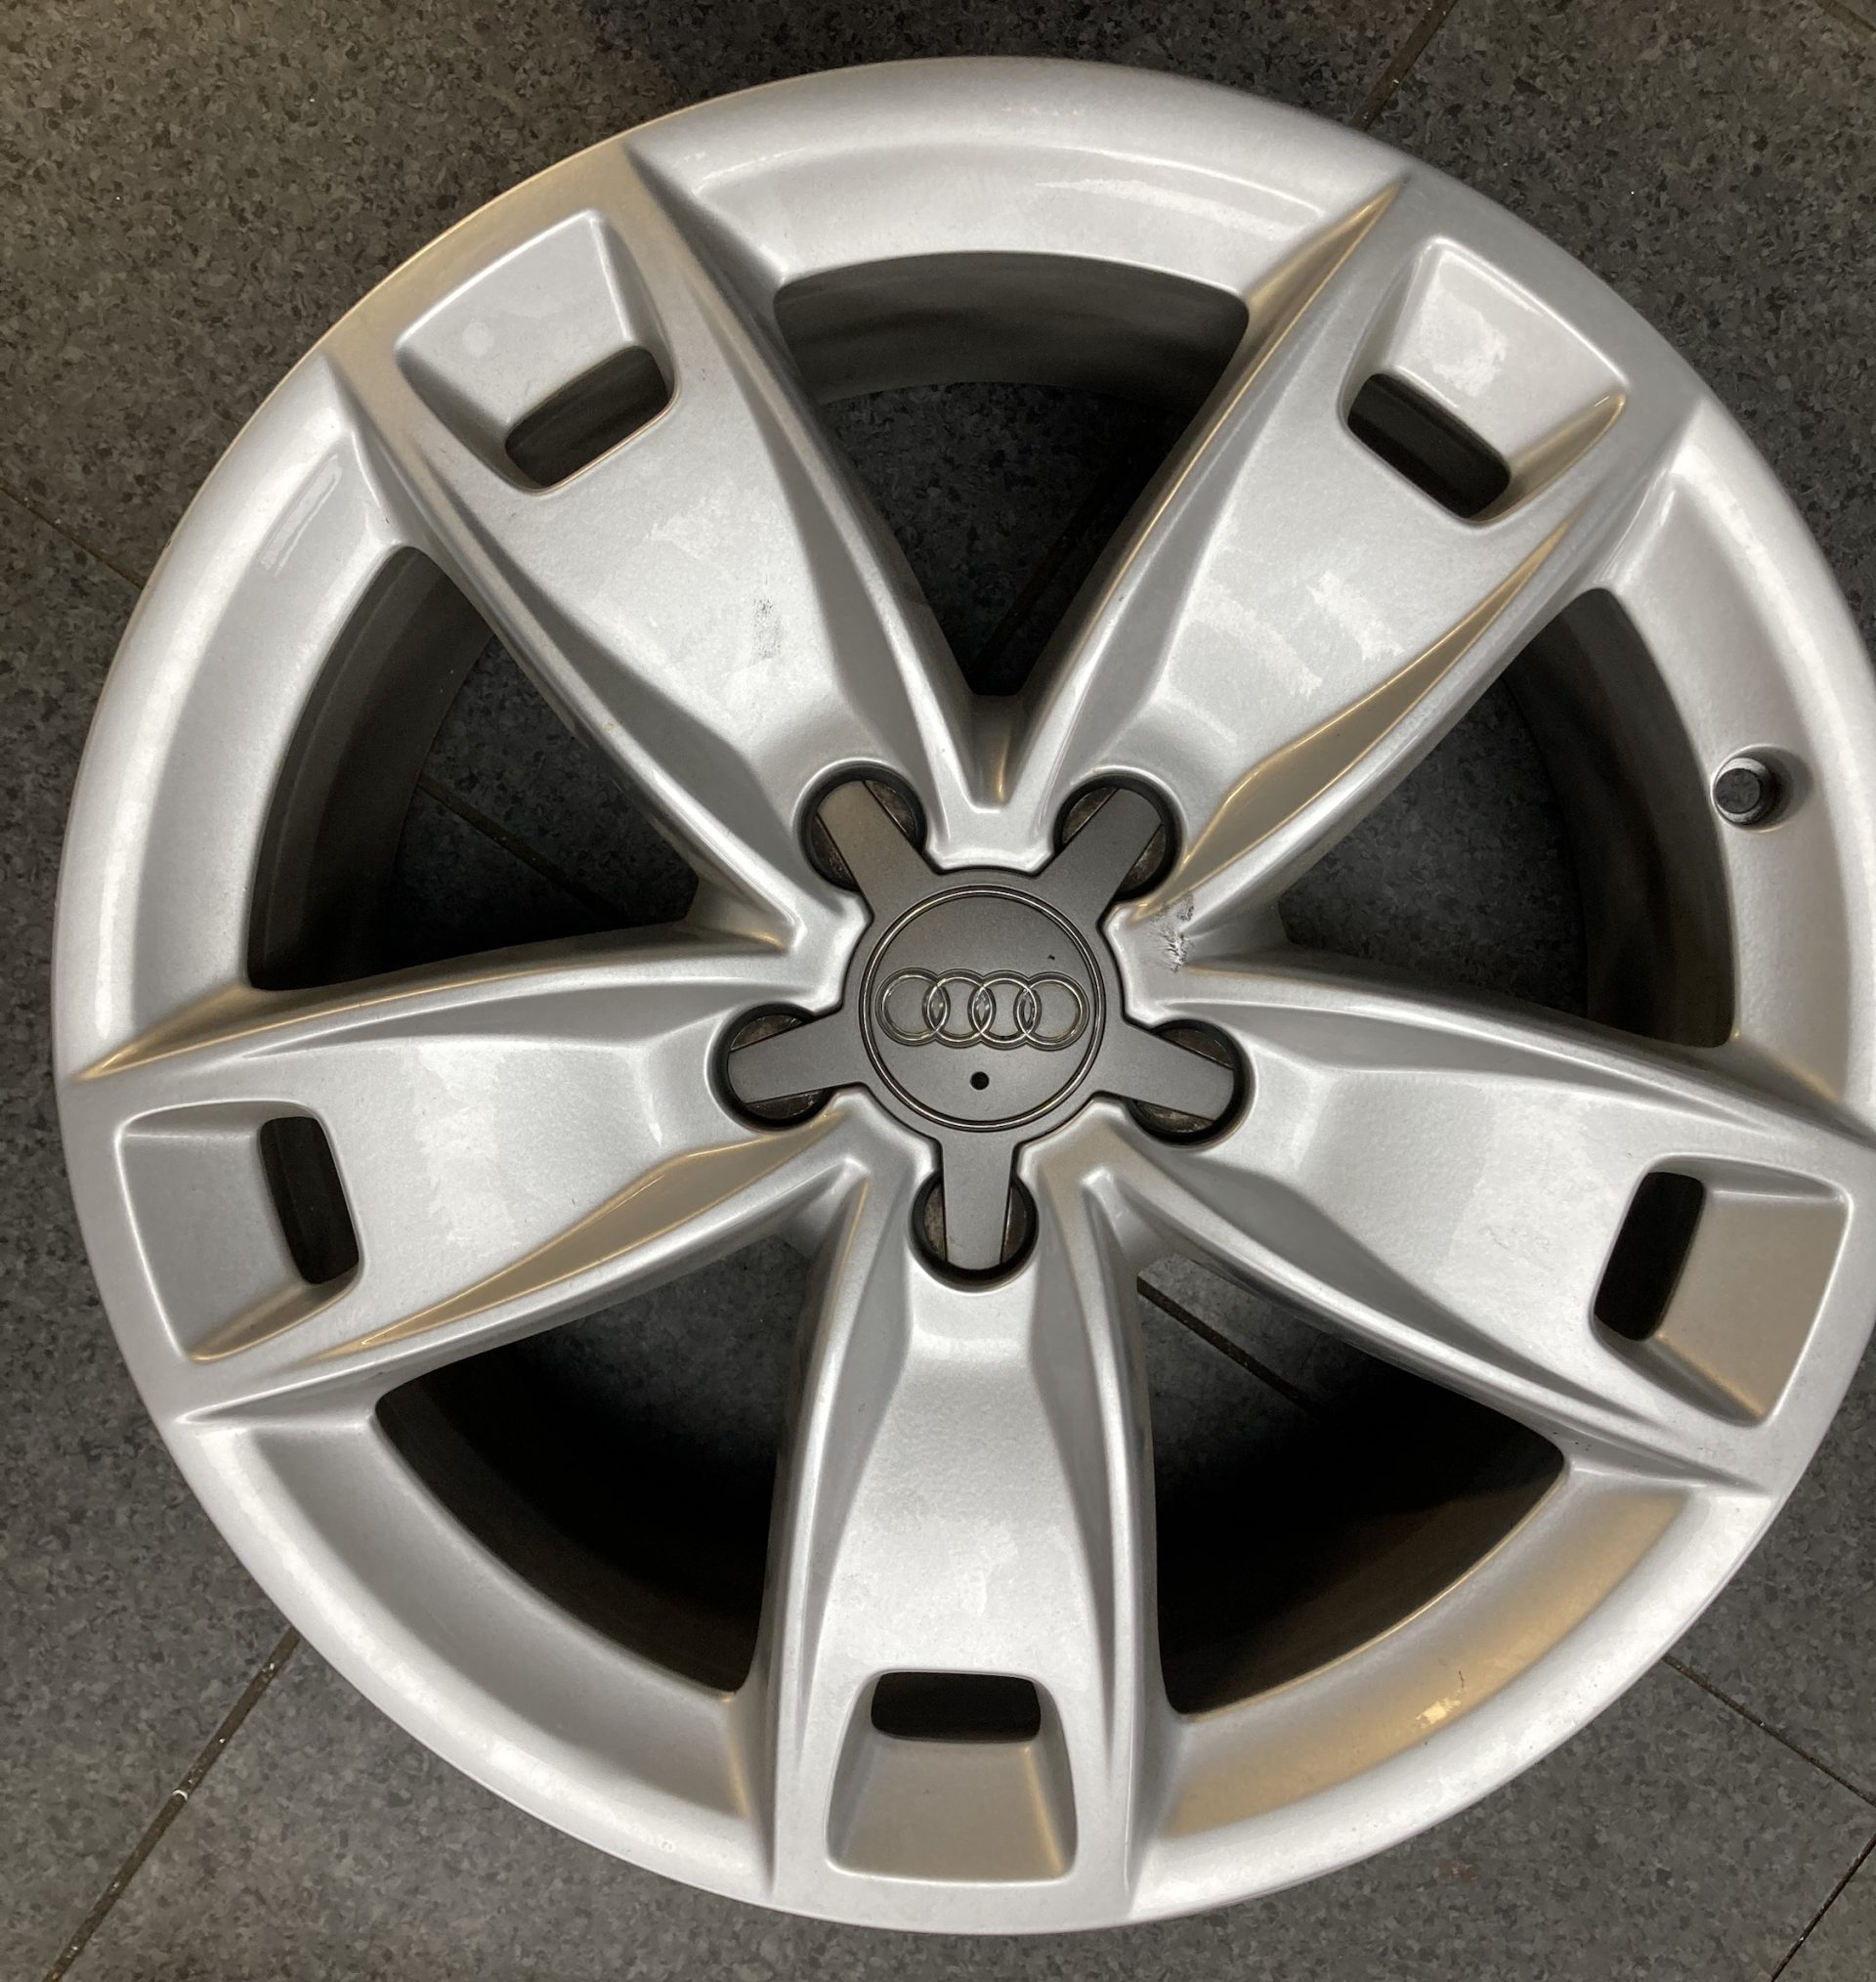 Audi A4 17” Alloys